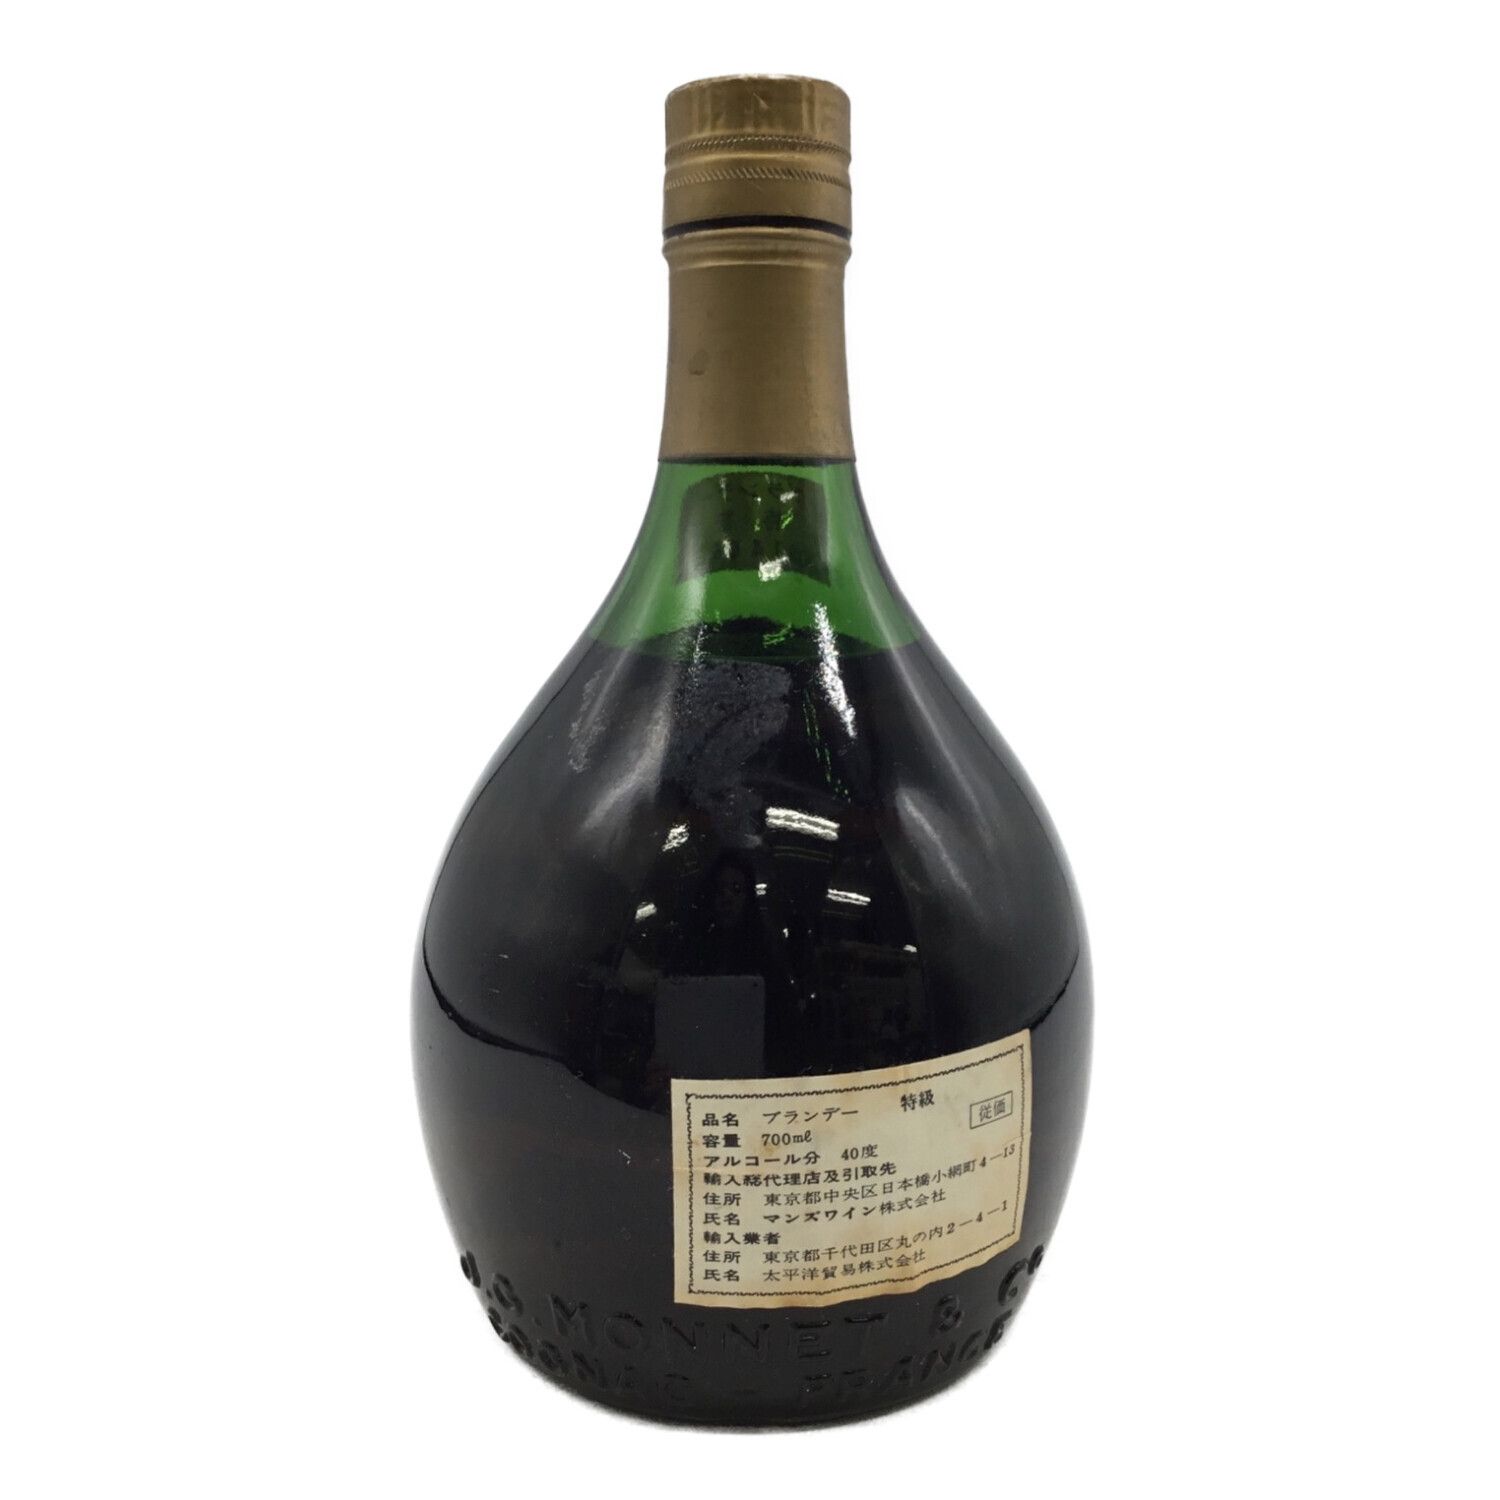 MONNET (モネ) コニャック 700ml j.g. monnet v.s.o.p fine cognac 未開封｜トレファクONLINE